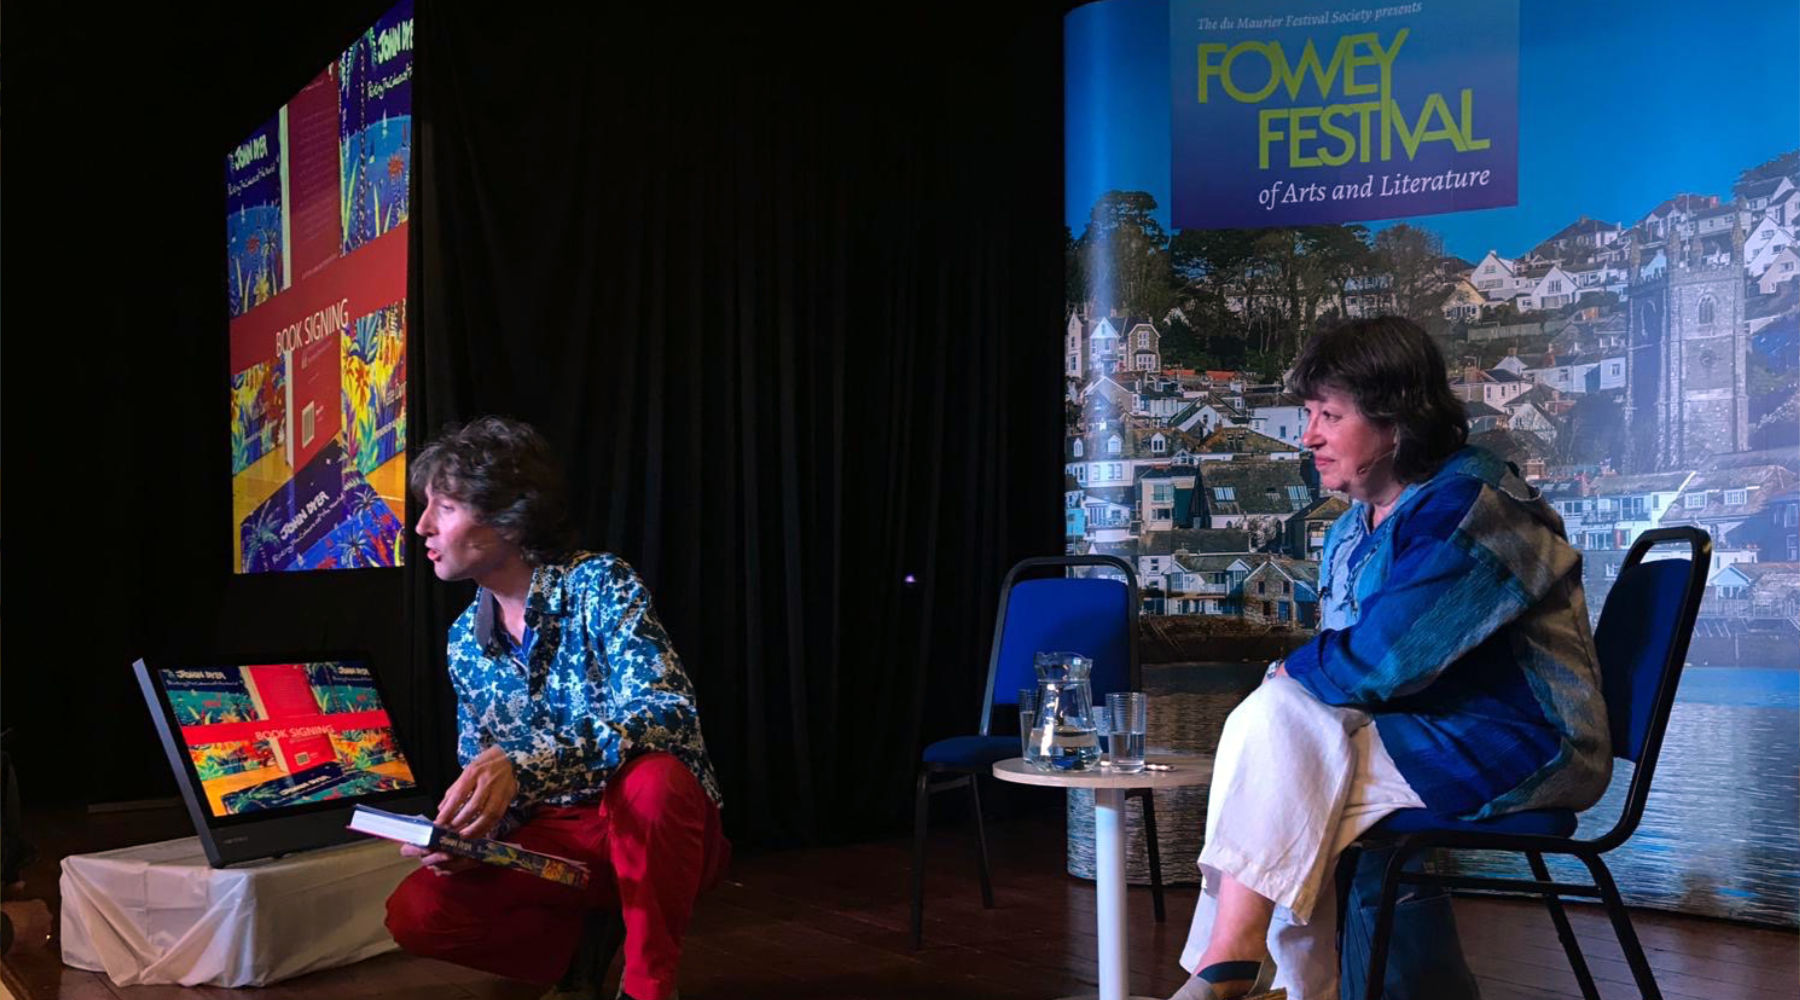 John Dyer to speak at Cornwall’s premier literary festival - Fowey Festival 2019